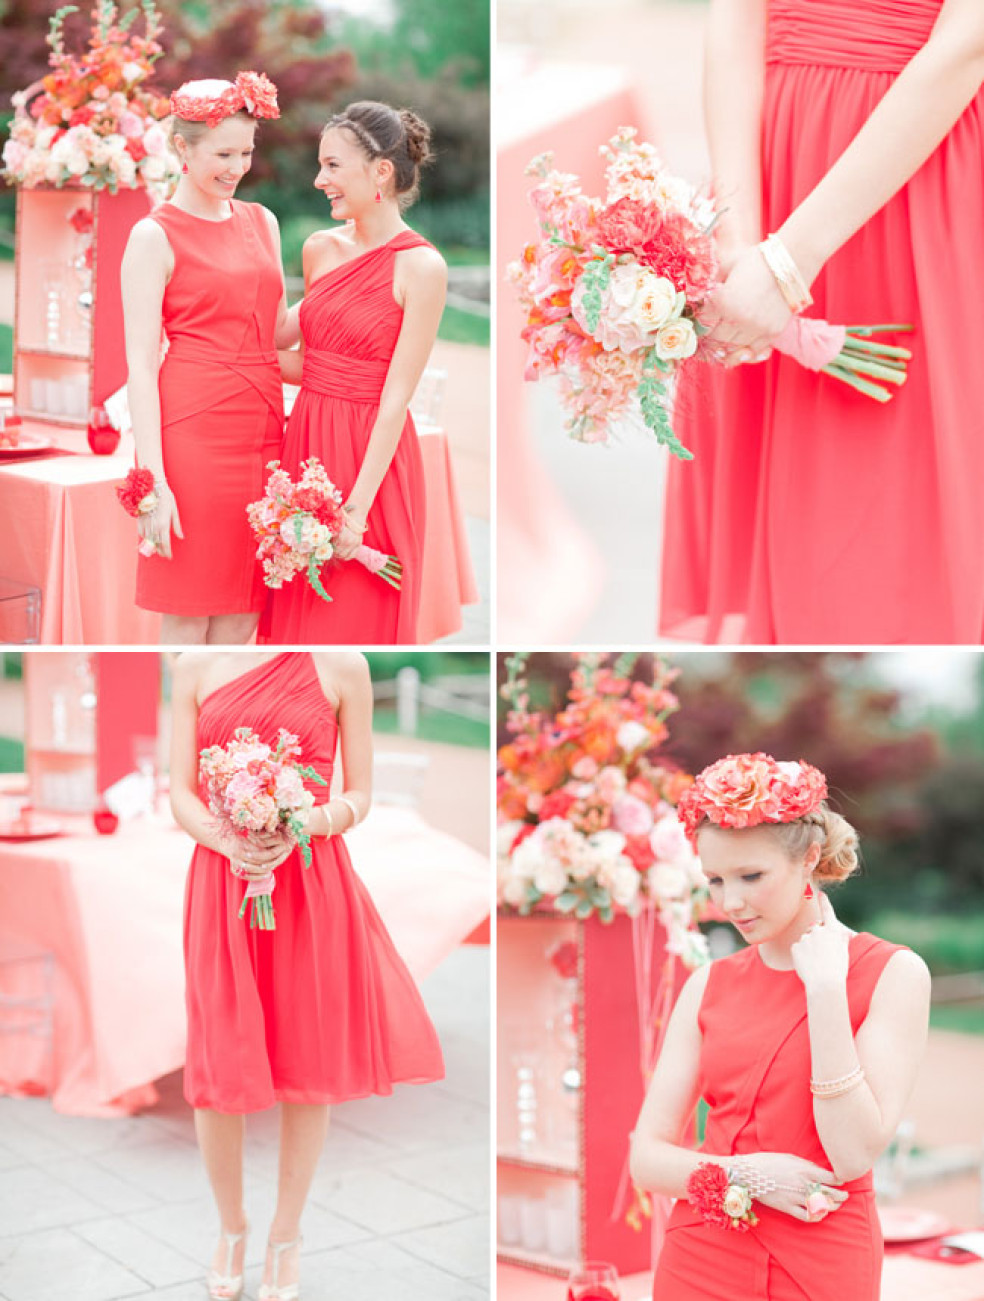 svadba - červená farba